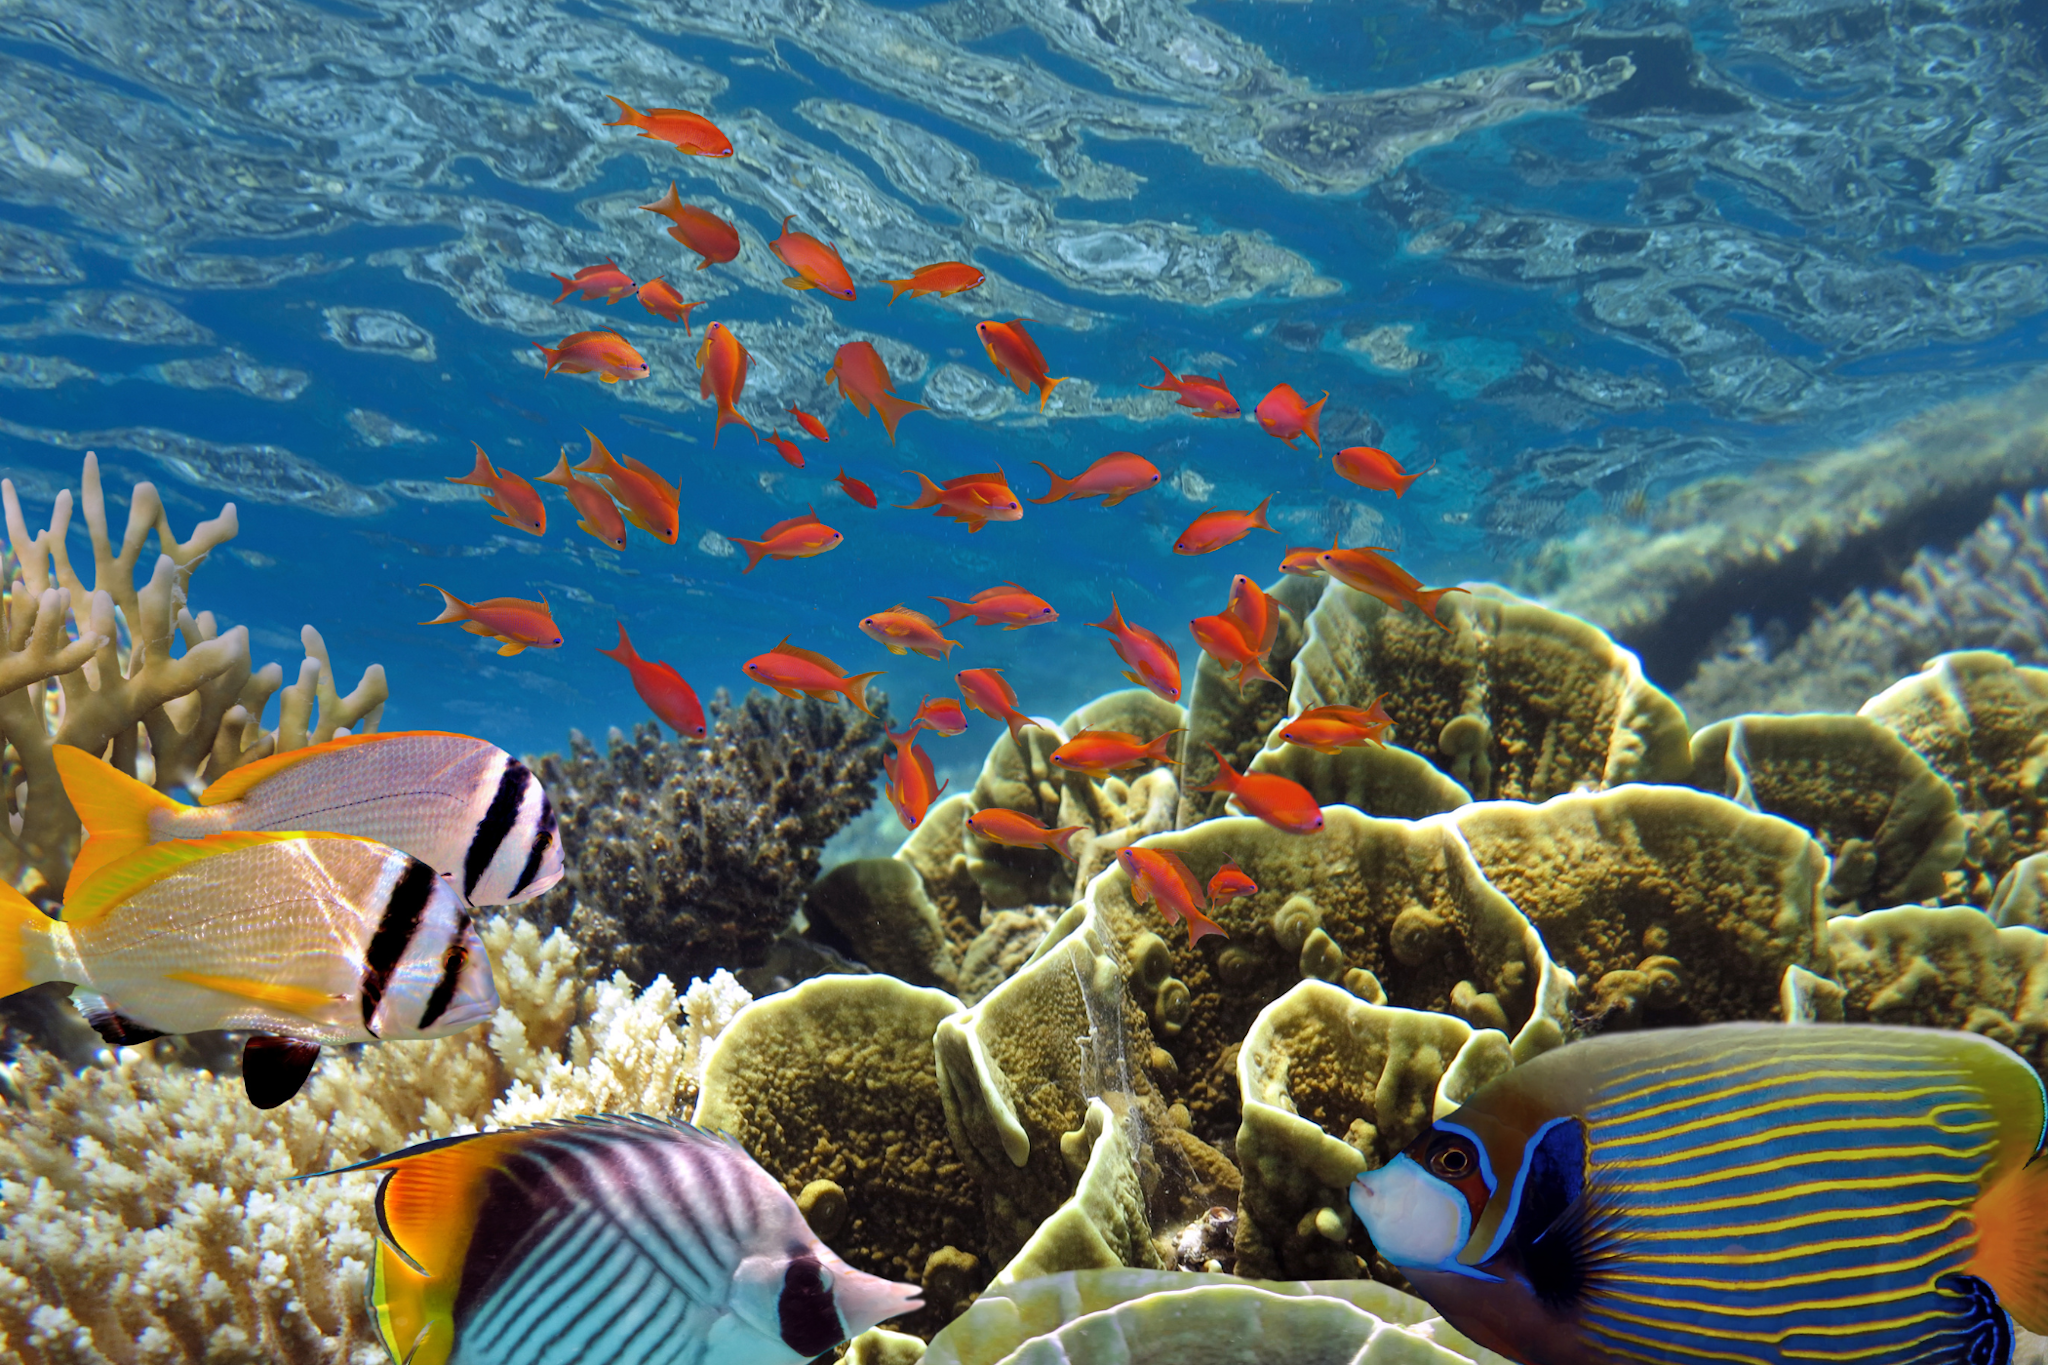 Red Sea Coral Jordan
Canva - https://www.canva.com/design/DAFscW5hUjI/p39yEMb3OO0v2VkwJbQ0NQ/edit